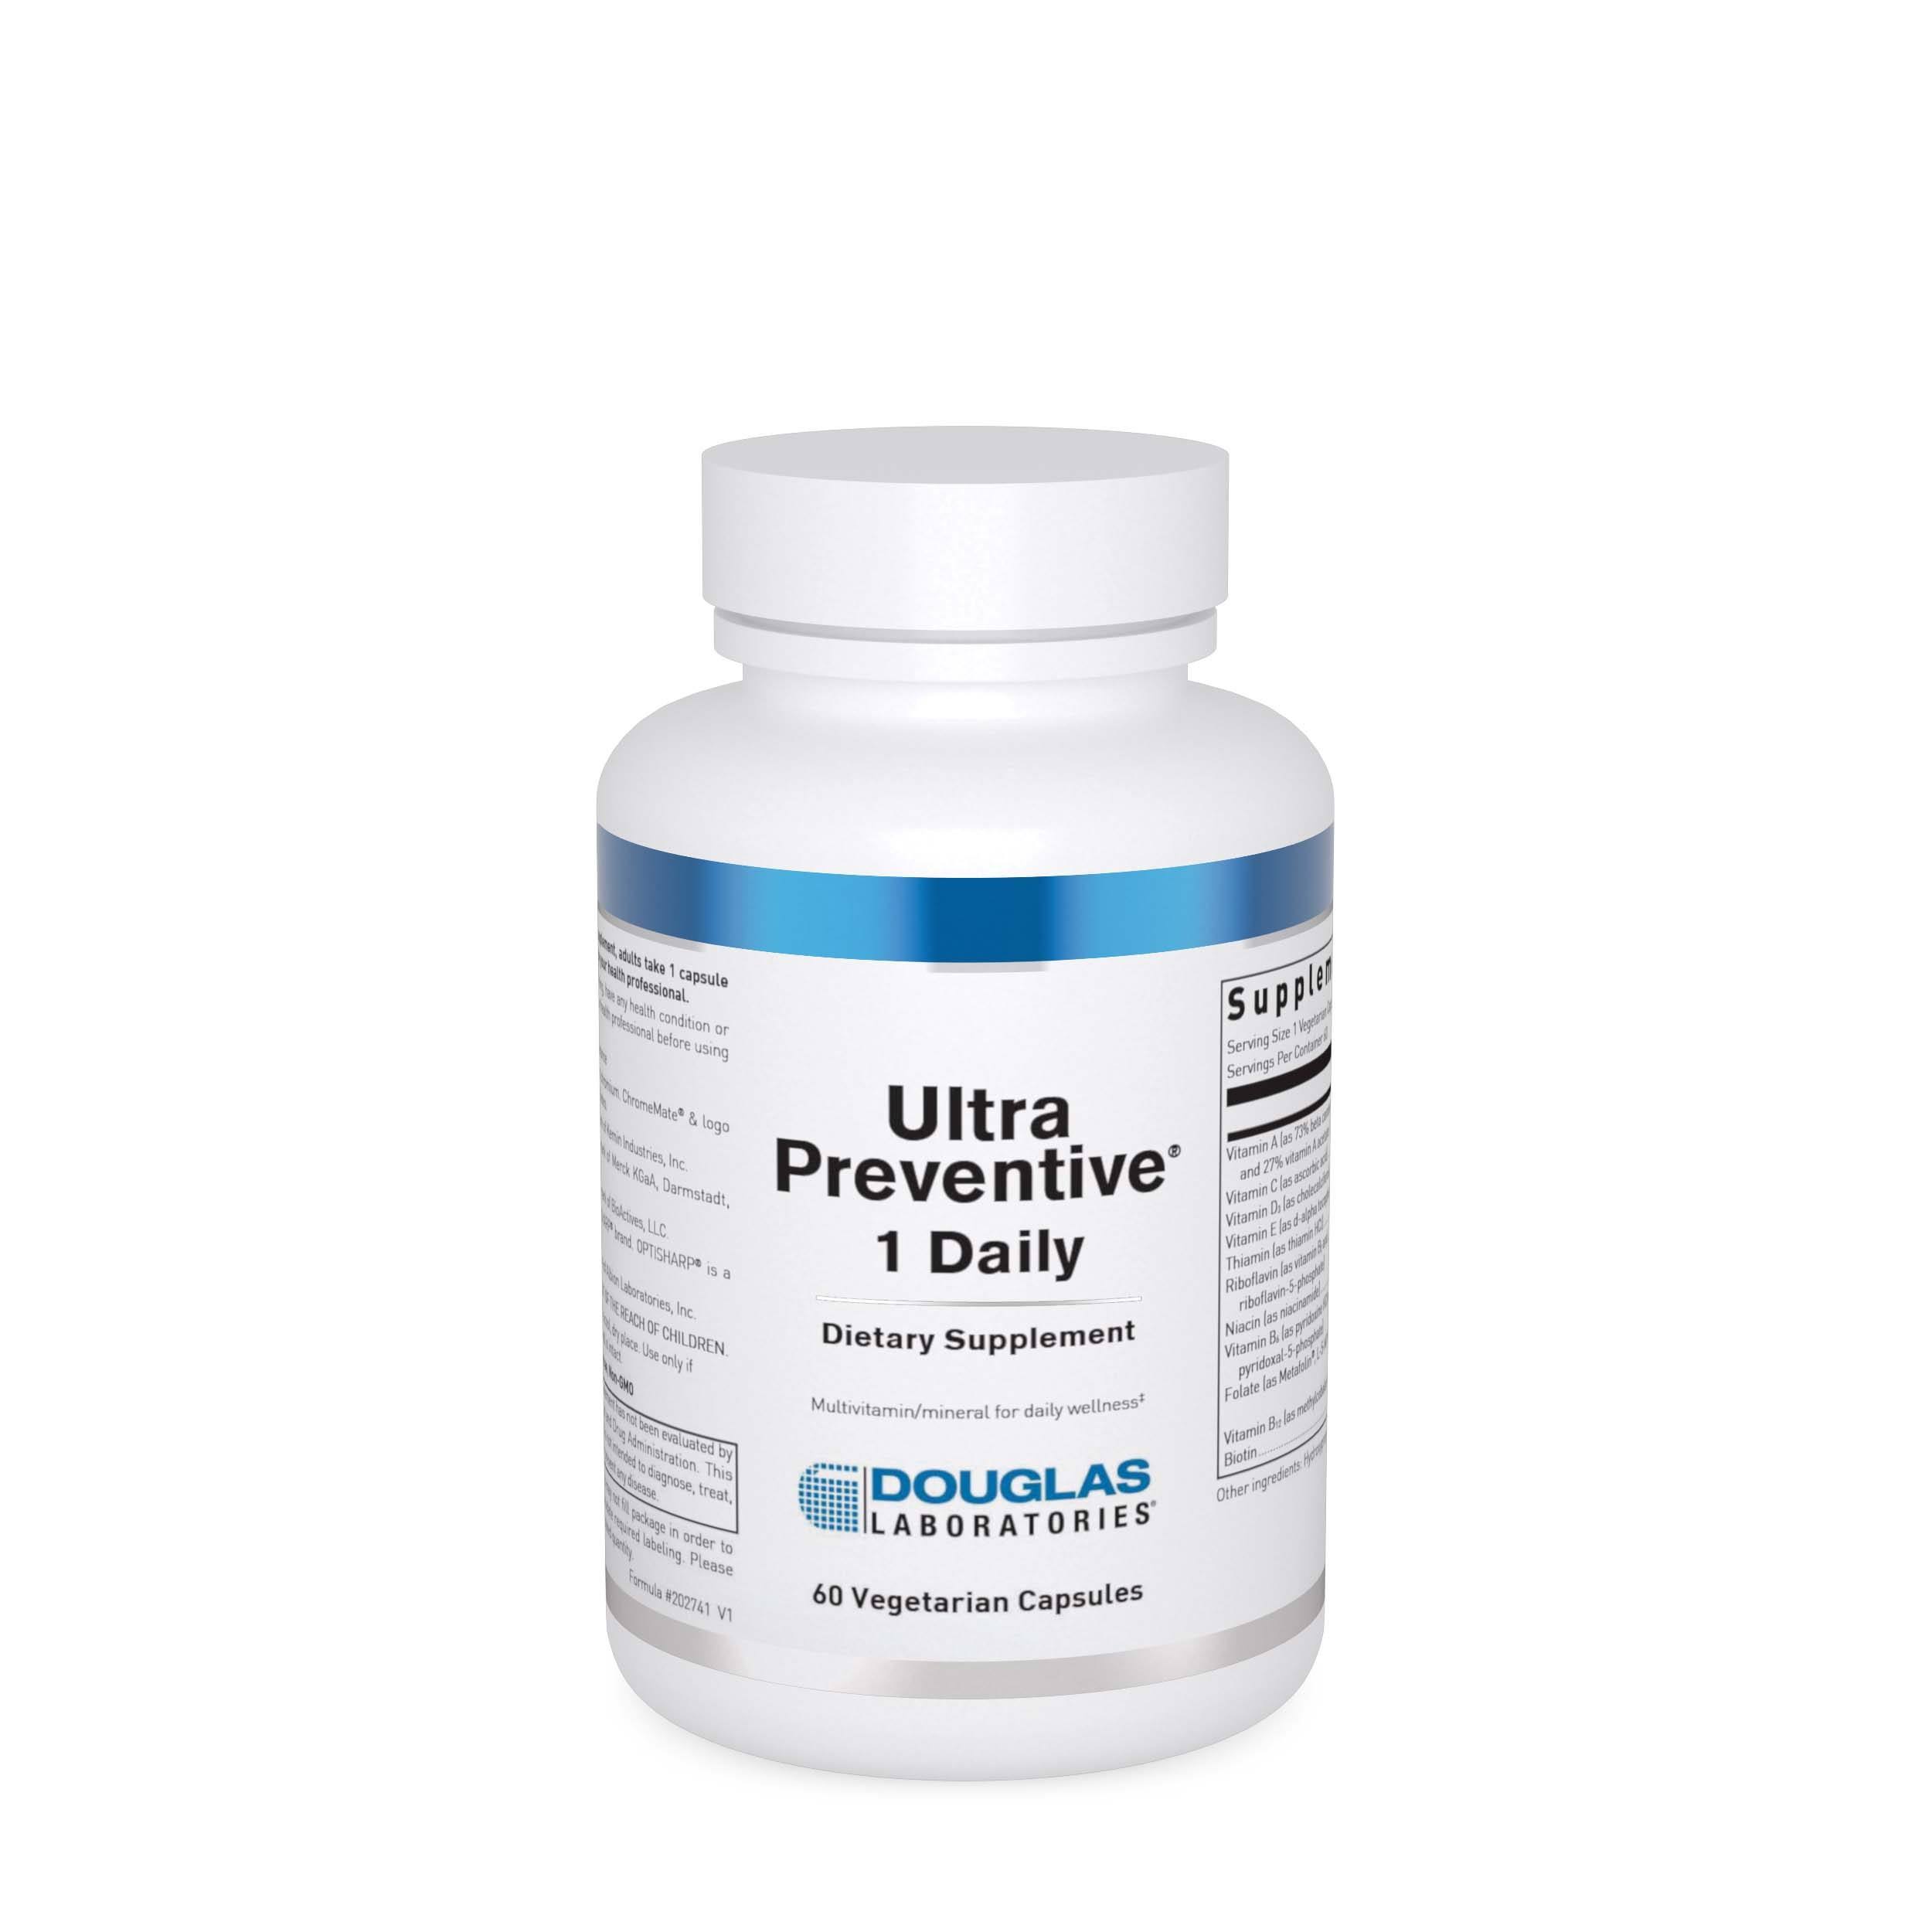 Douglas Laboratories - Ultra Preventive 1 Daily - 60 Capsules